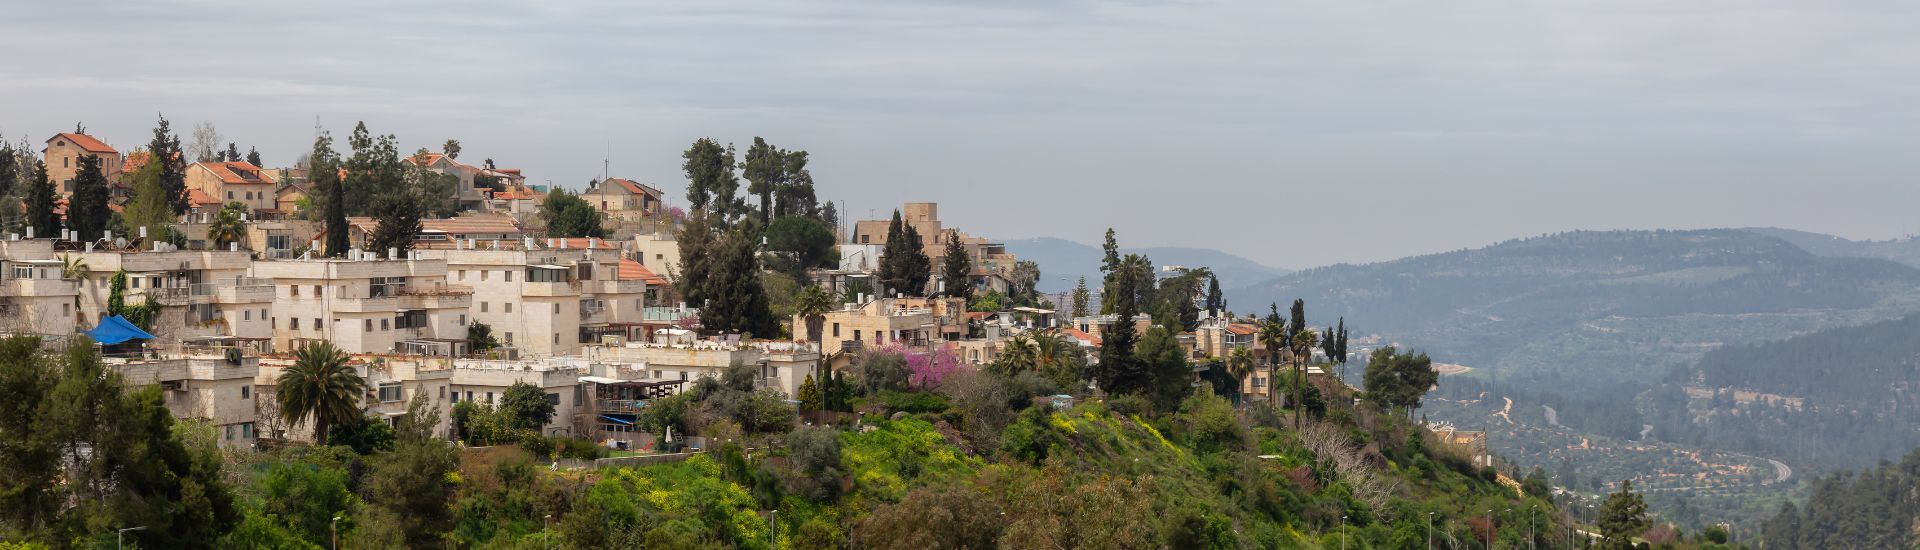 Residential homes in Jerusalem, Israel